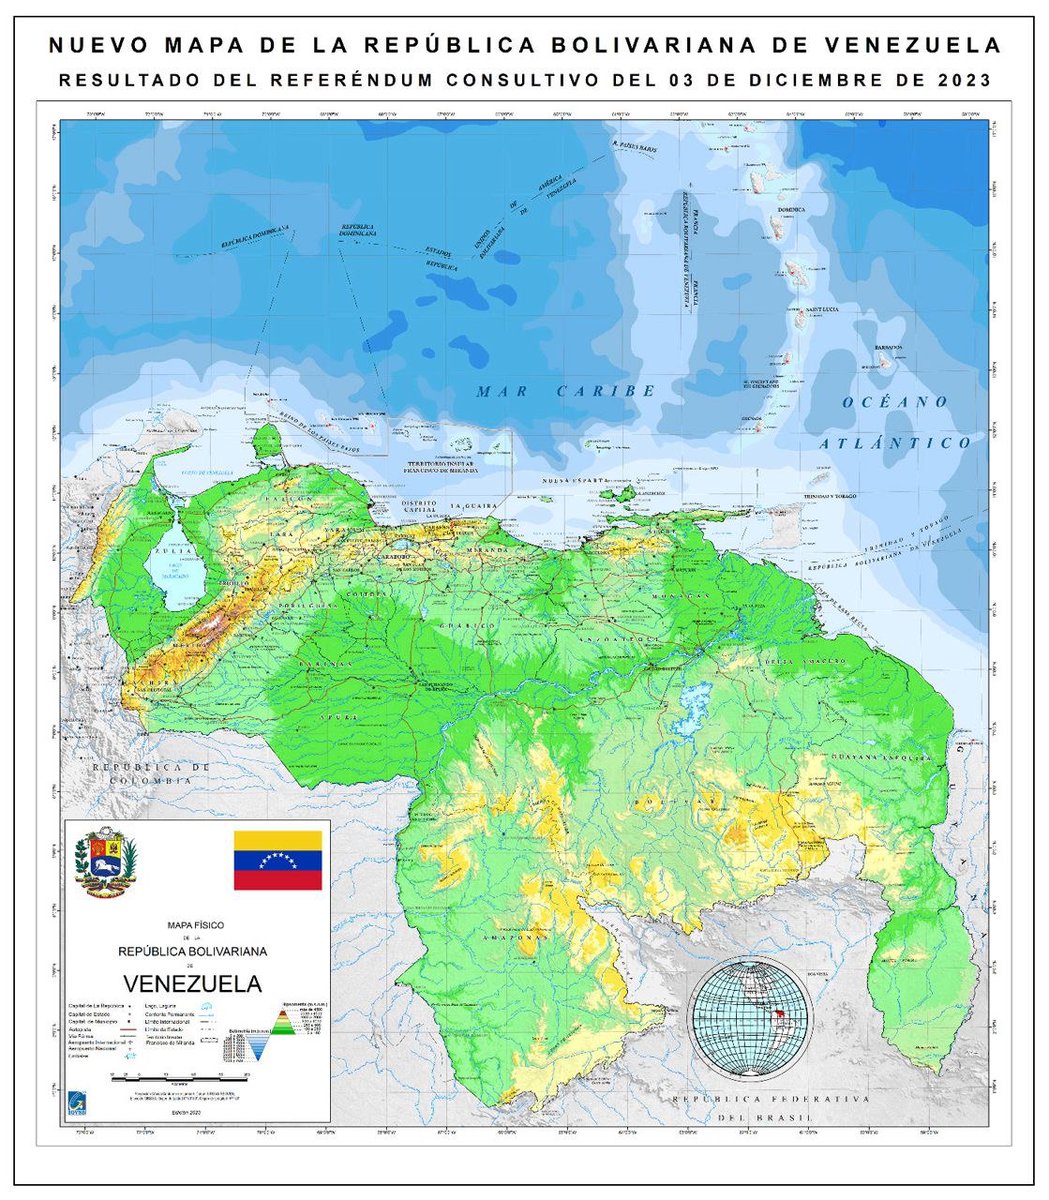 En ejercicio de su democracia y soberanía el pueblo venezolano reafirmó sus derechos irrenunciables sobre el Esequibo. Este es el mapa de Venezuela, íntegro, que incluye nuestro territorio de la Guayana Esequiba.